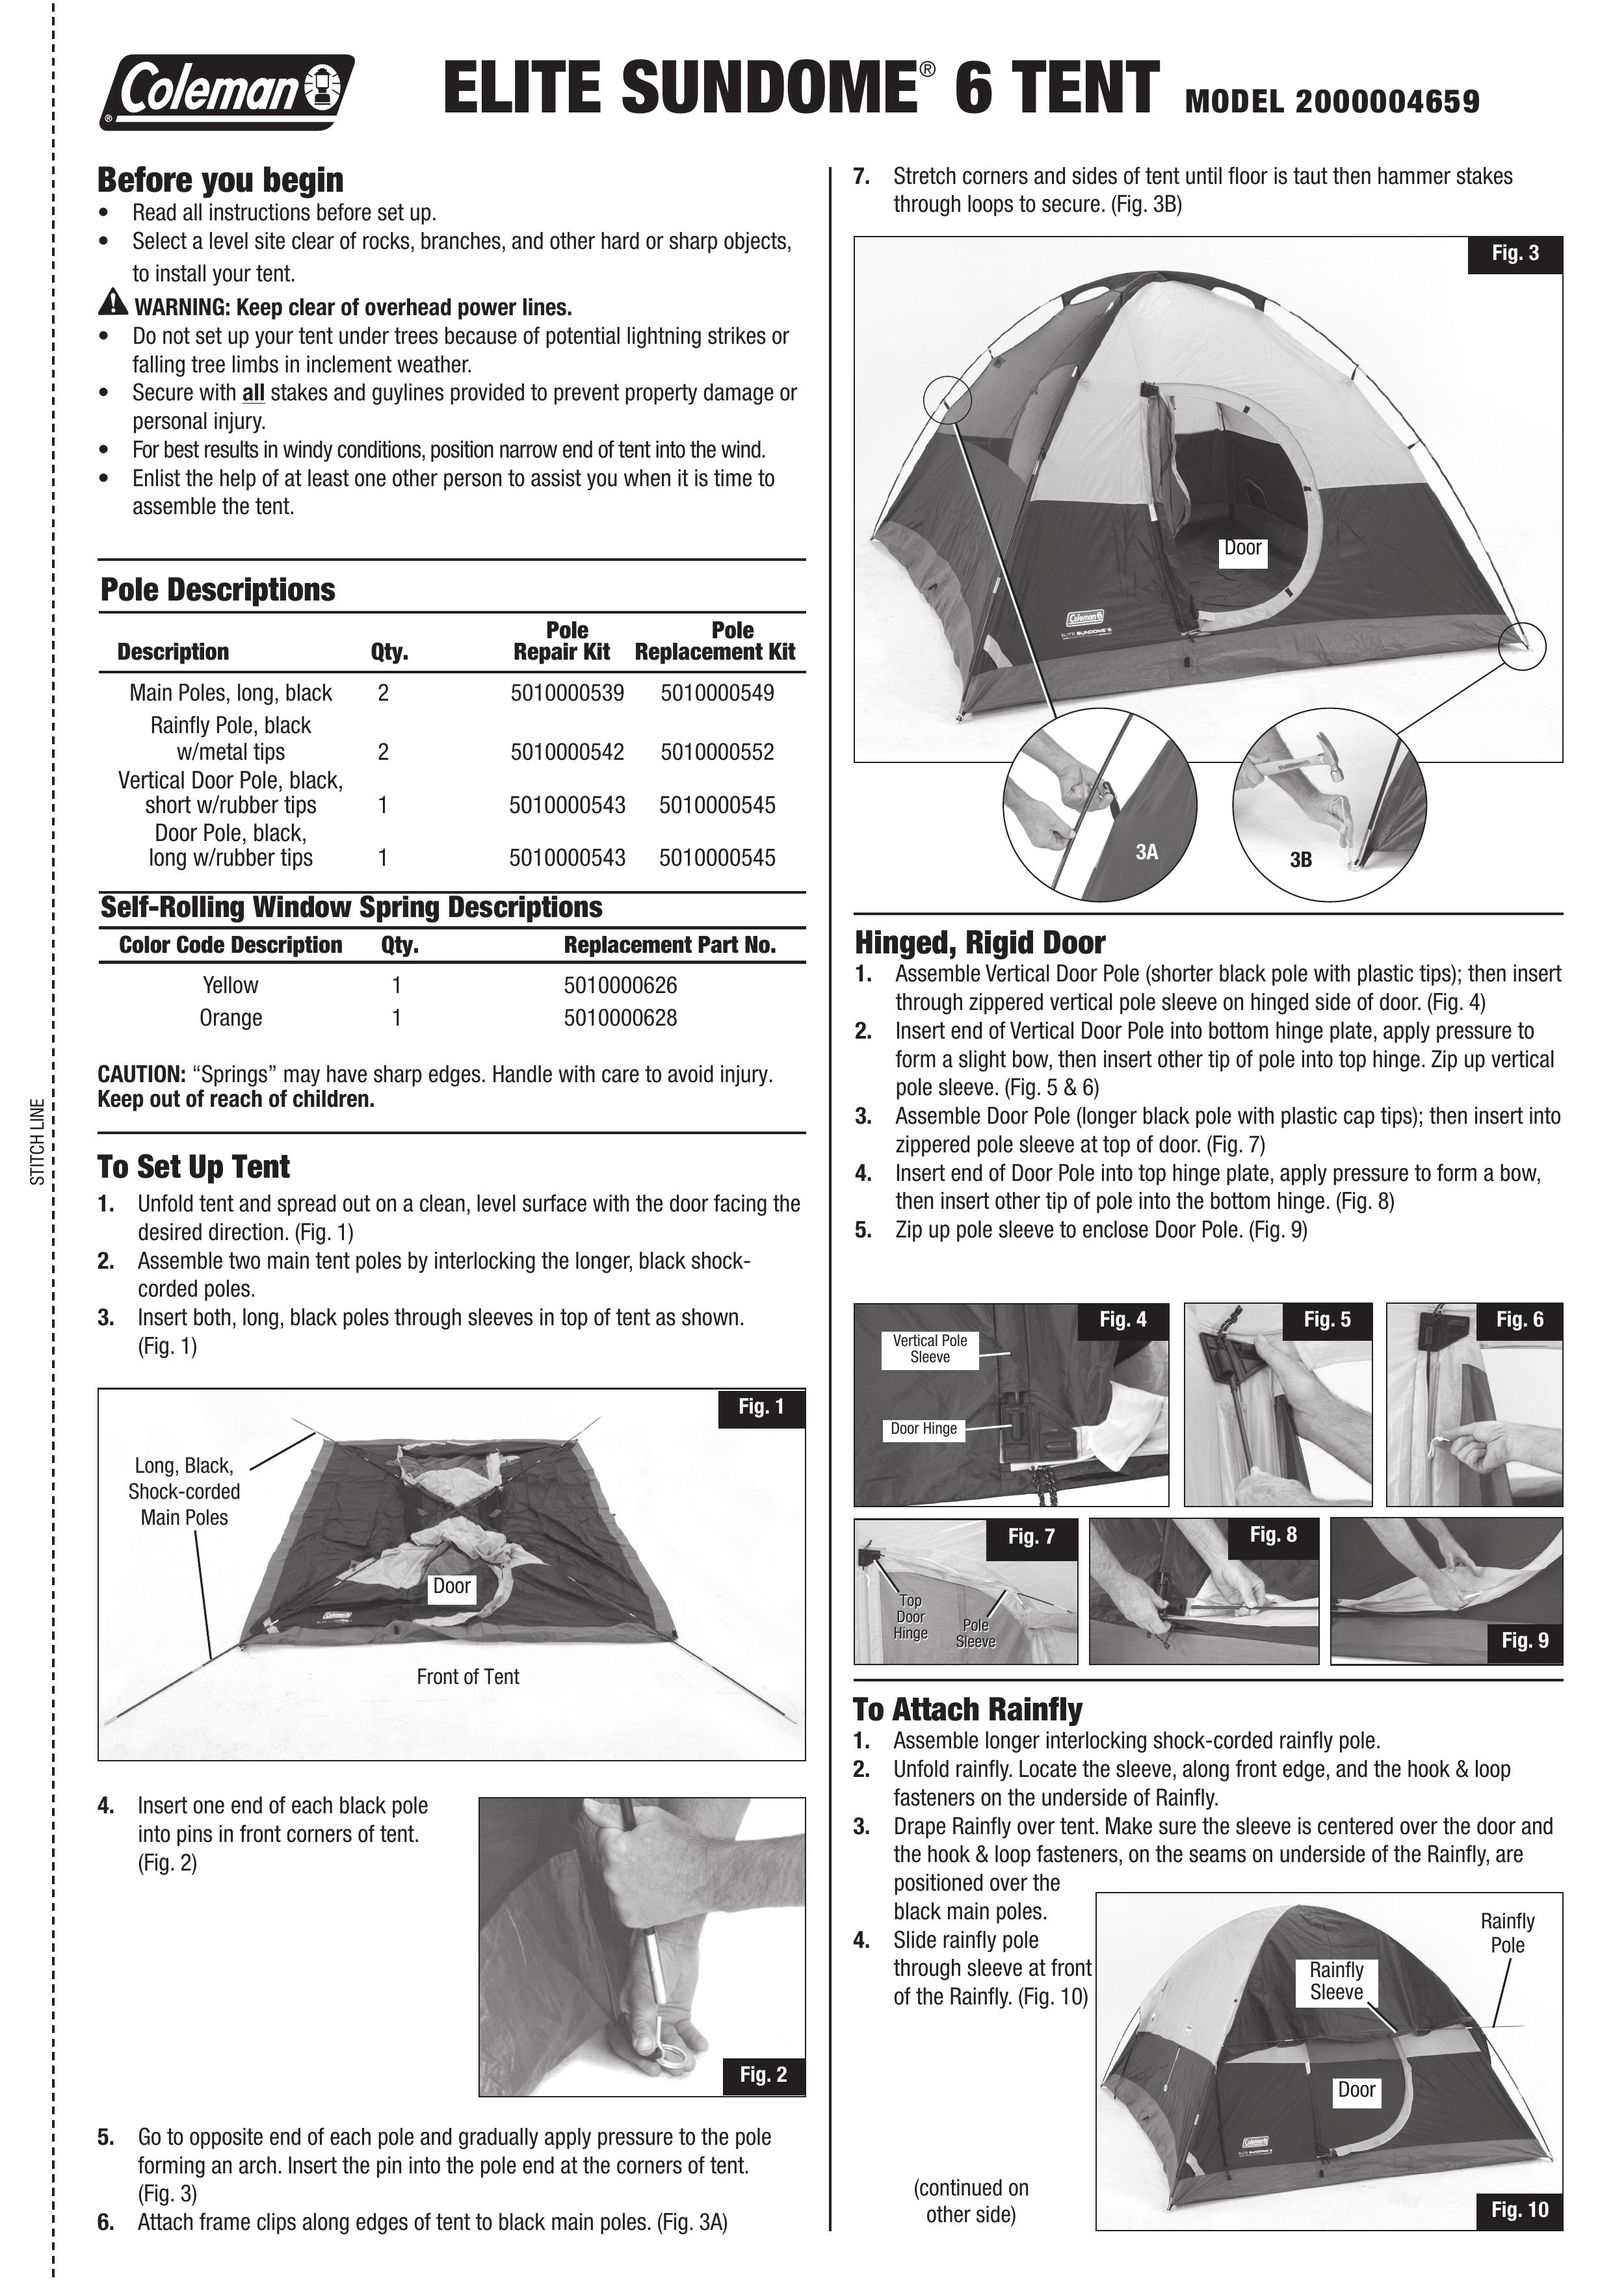 Coleman 2000004659 Tent User Manual